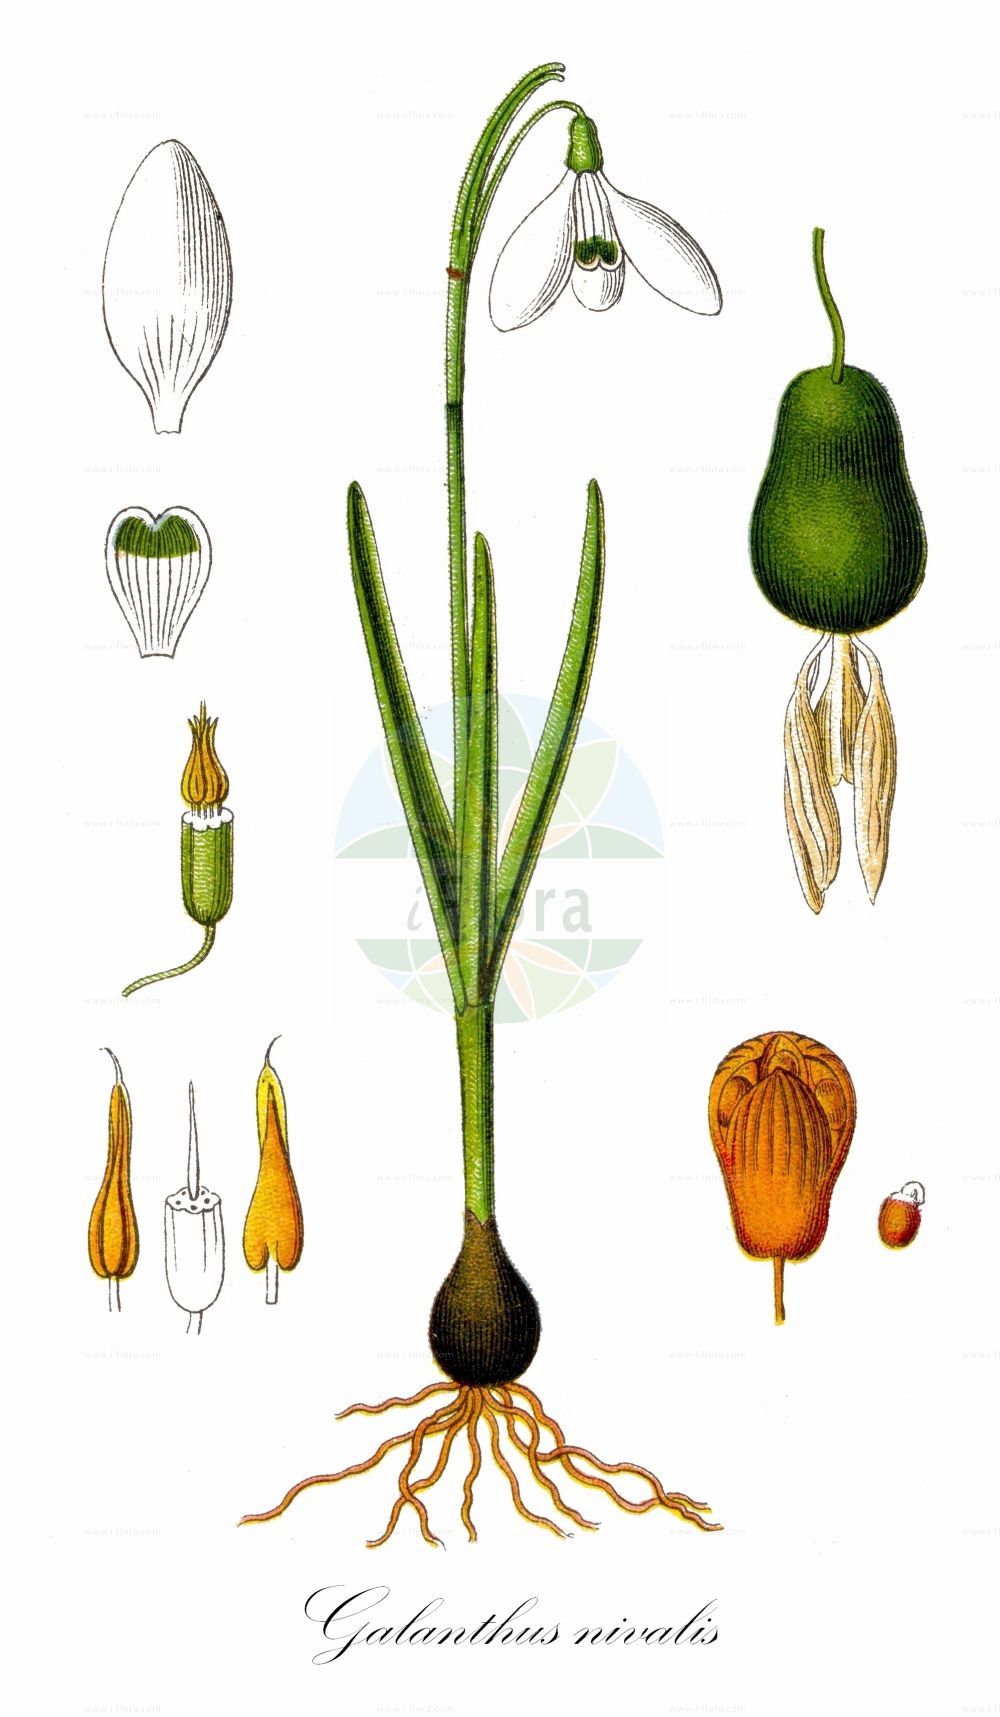 Historische Abbildung von Galanthus nivalis (Kleines Schneeglöckchen - Snowdrop). ---- Historical Drawing of Galanthus nivalis (Kleines Schneeglöckchen - Snowdrop).(Galanthus nivalis,Kleines Schneeglöckchen,Snowdrop,Chianthemum nivale,Galanthus alexandri,Galanthus imperati,Galanthus melvillei,Galanthus montanus,Galanthus nivalis,Galanthus scharlokii,Galanthus umbricus,Kleines Schneegloeckchen,Snowdrop,Common Snowdrop,Snow Flower,Galanthus,Schneeglöckchen,Snowdrop,Amaryllidaceae,Narzissengewächse,Amaryllis family,Sturm (1796f))